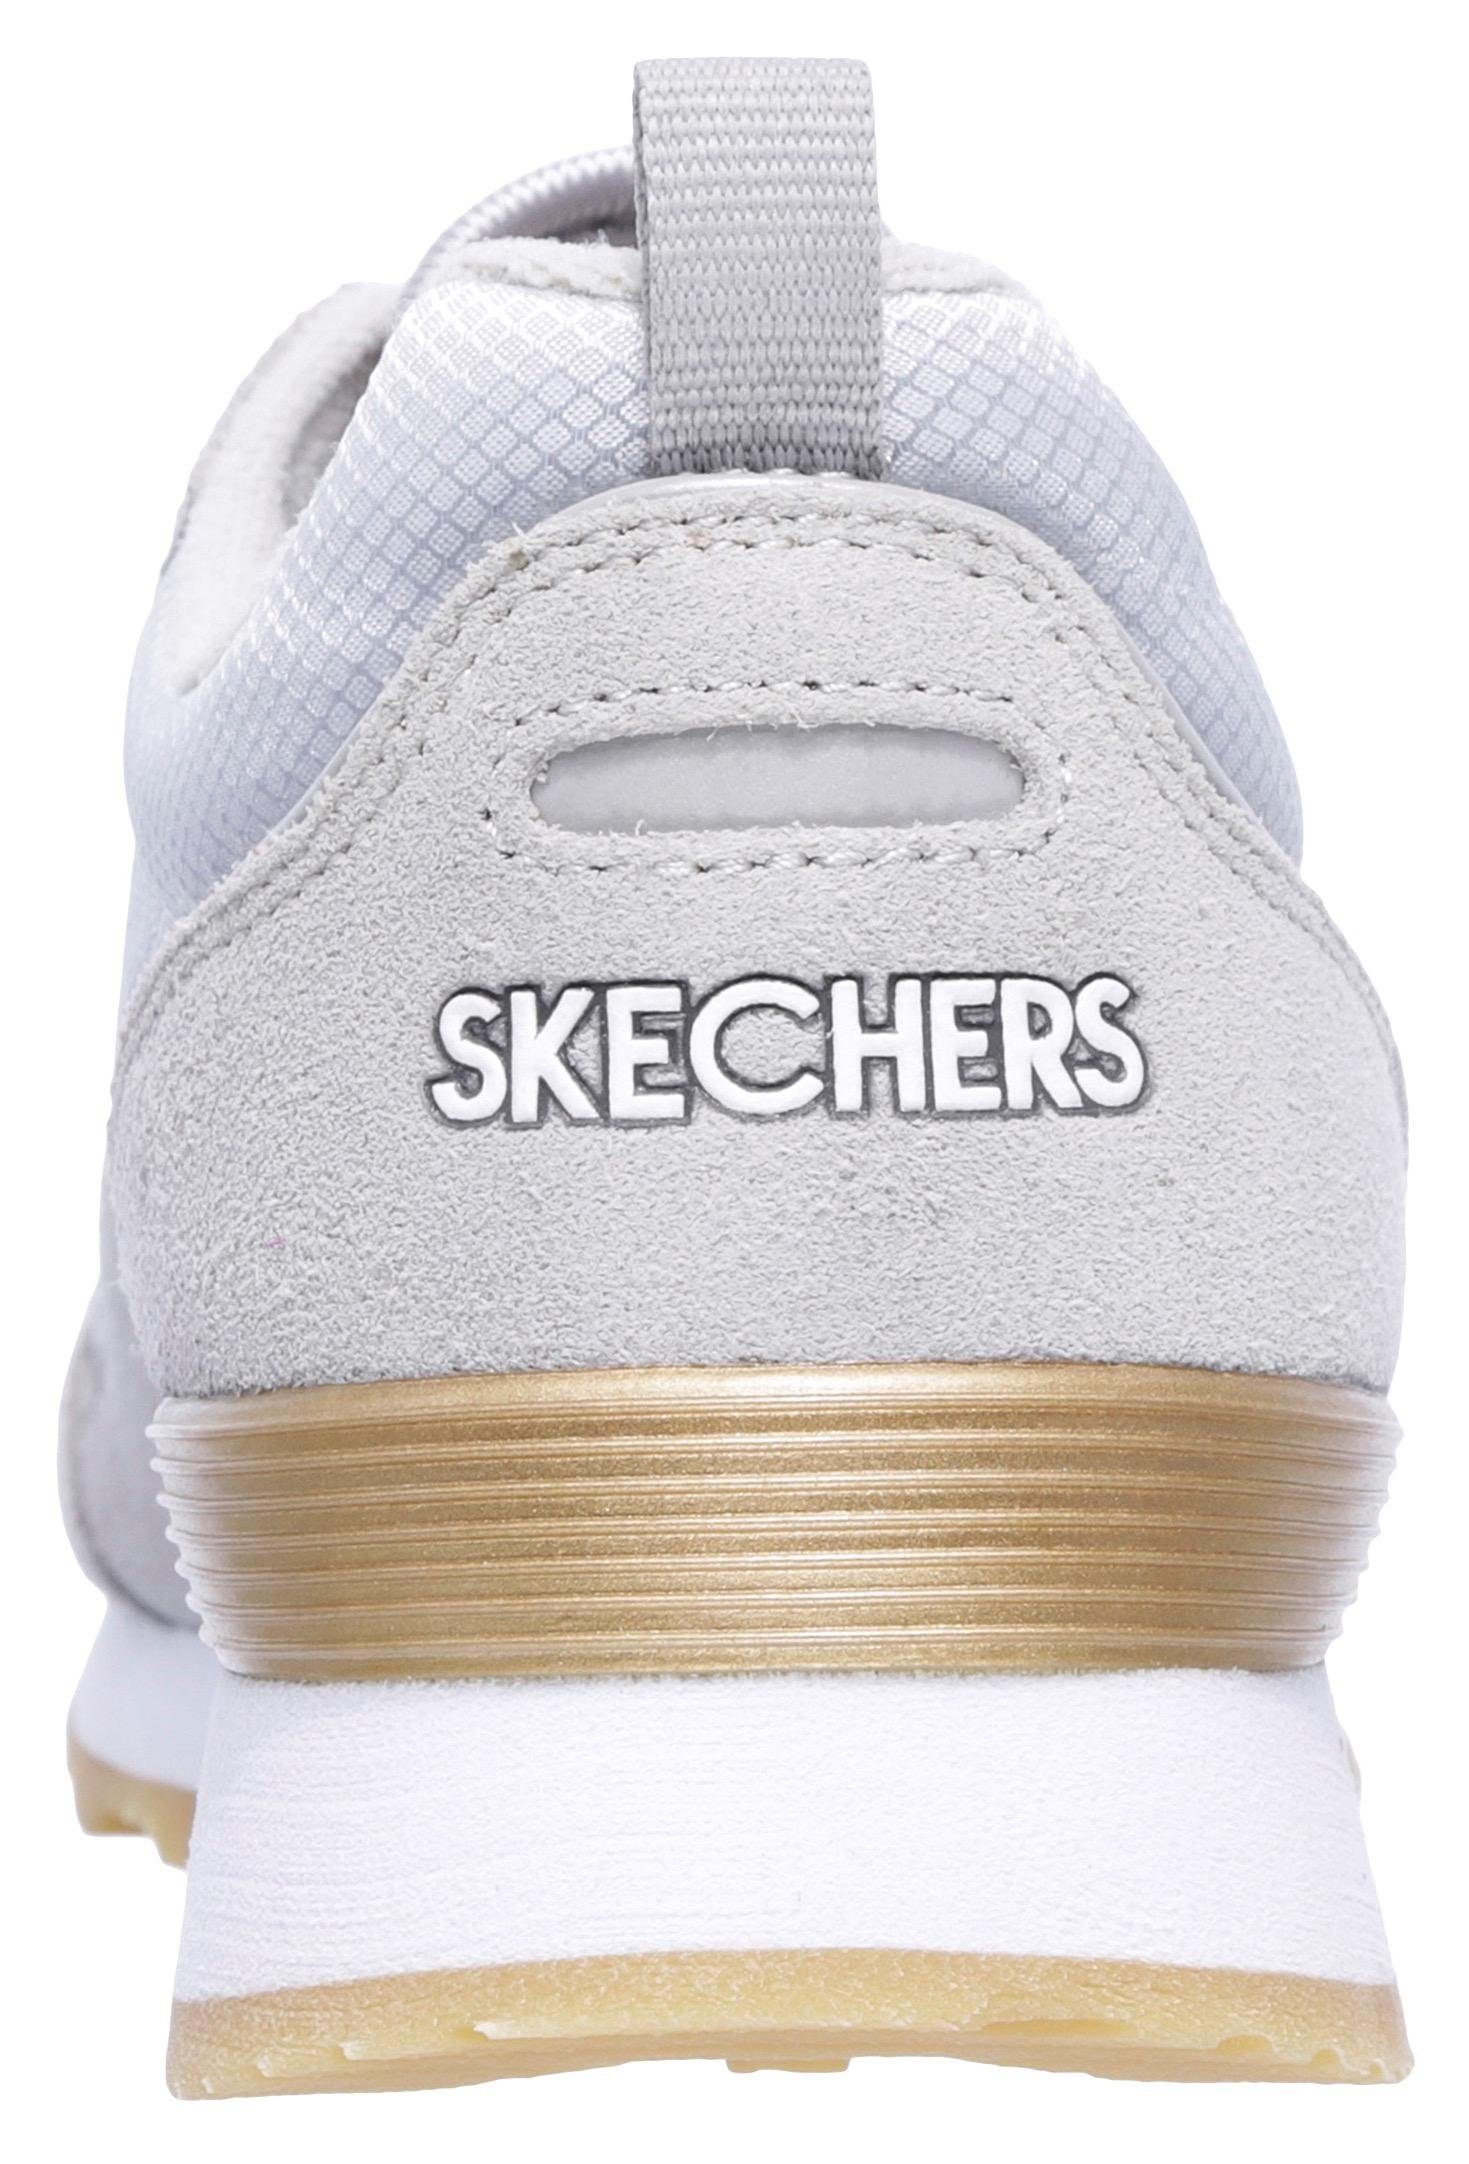 GURL mit komfortabler OG - Skechers Sneaker GOLDN 85 hellgrau Memory Foam Air-Cooled Ausstattung